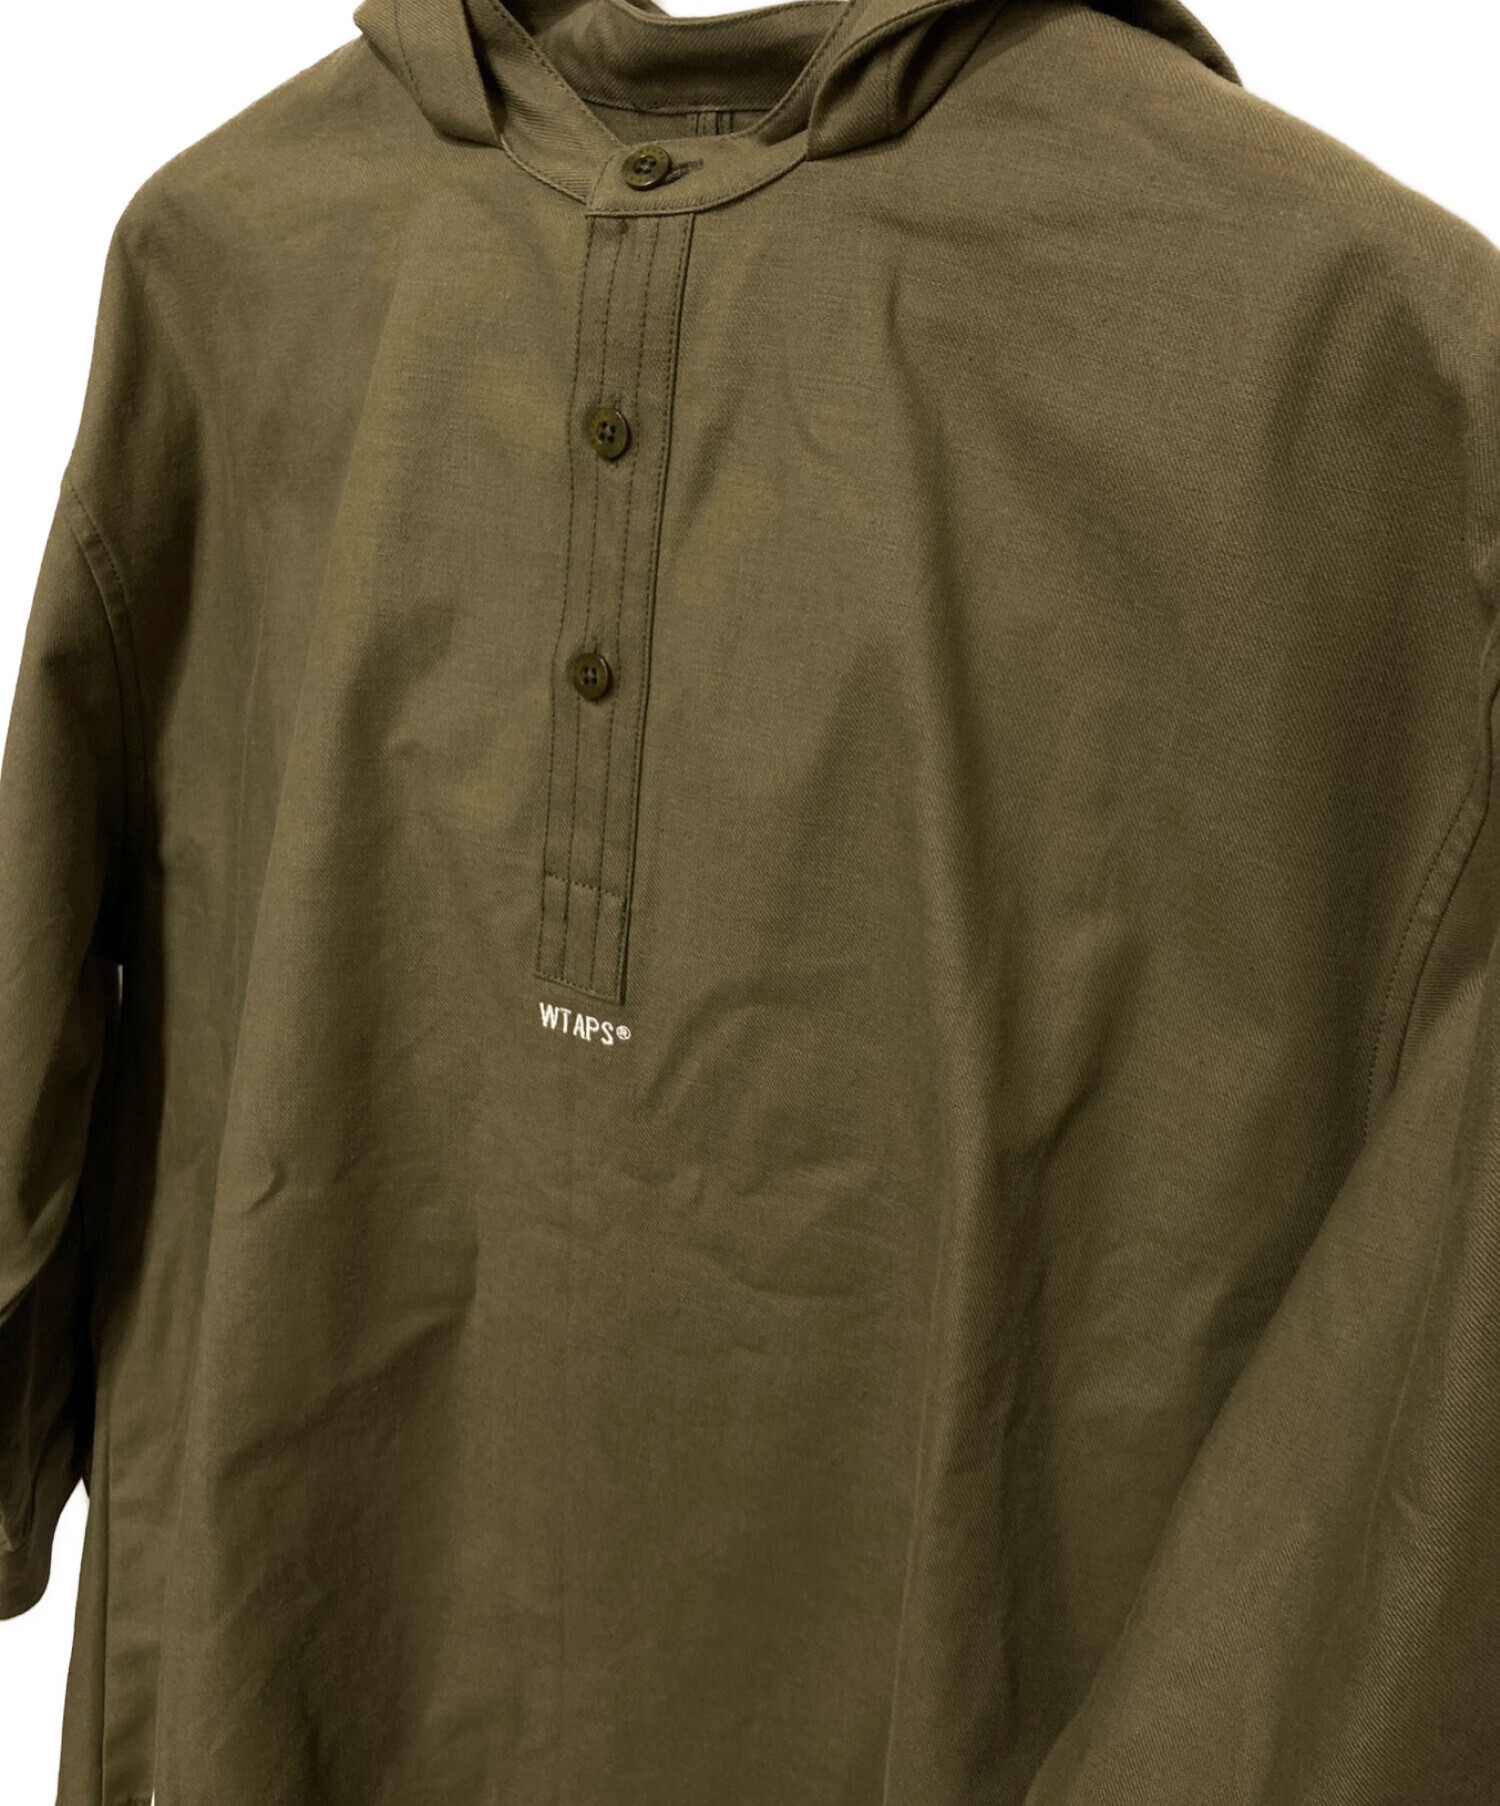 WTAPS (ダブルタップス) FALCONERフーディプルオーバーシャツ オリーブ サイズ:2 未使用品